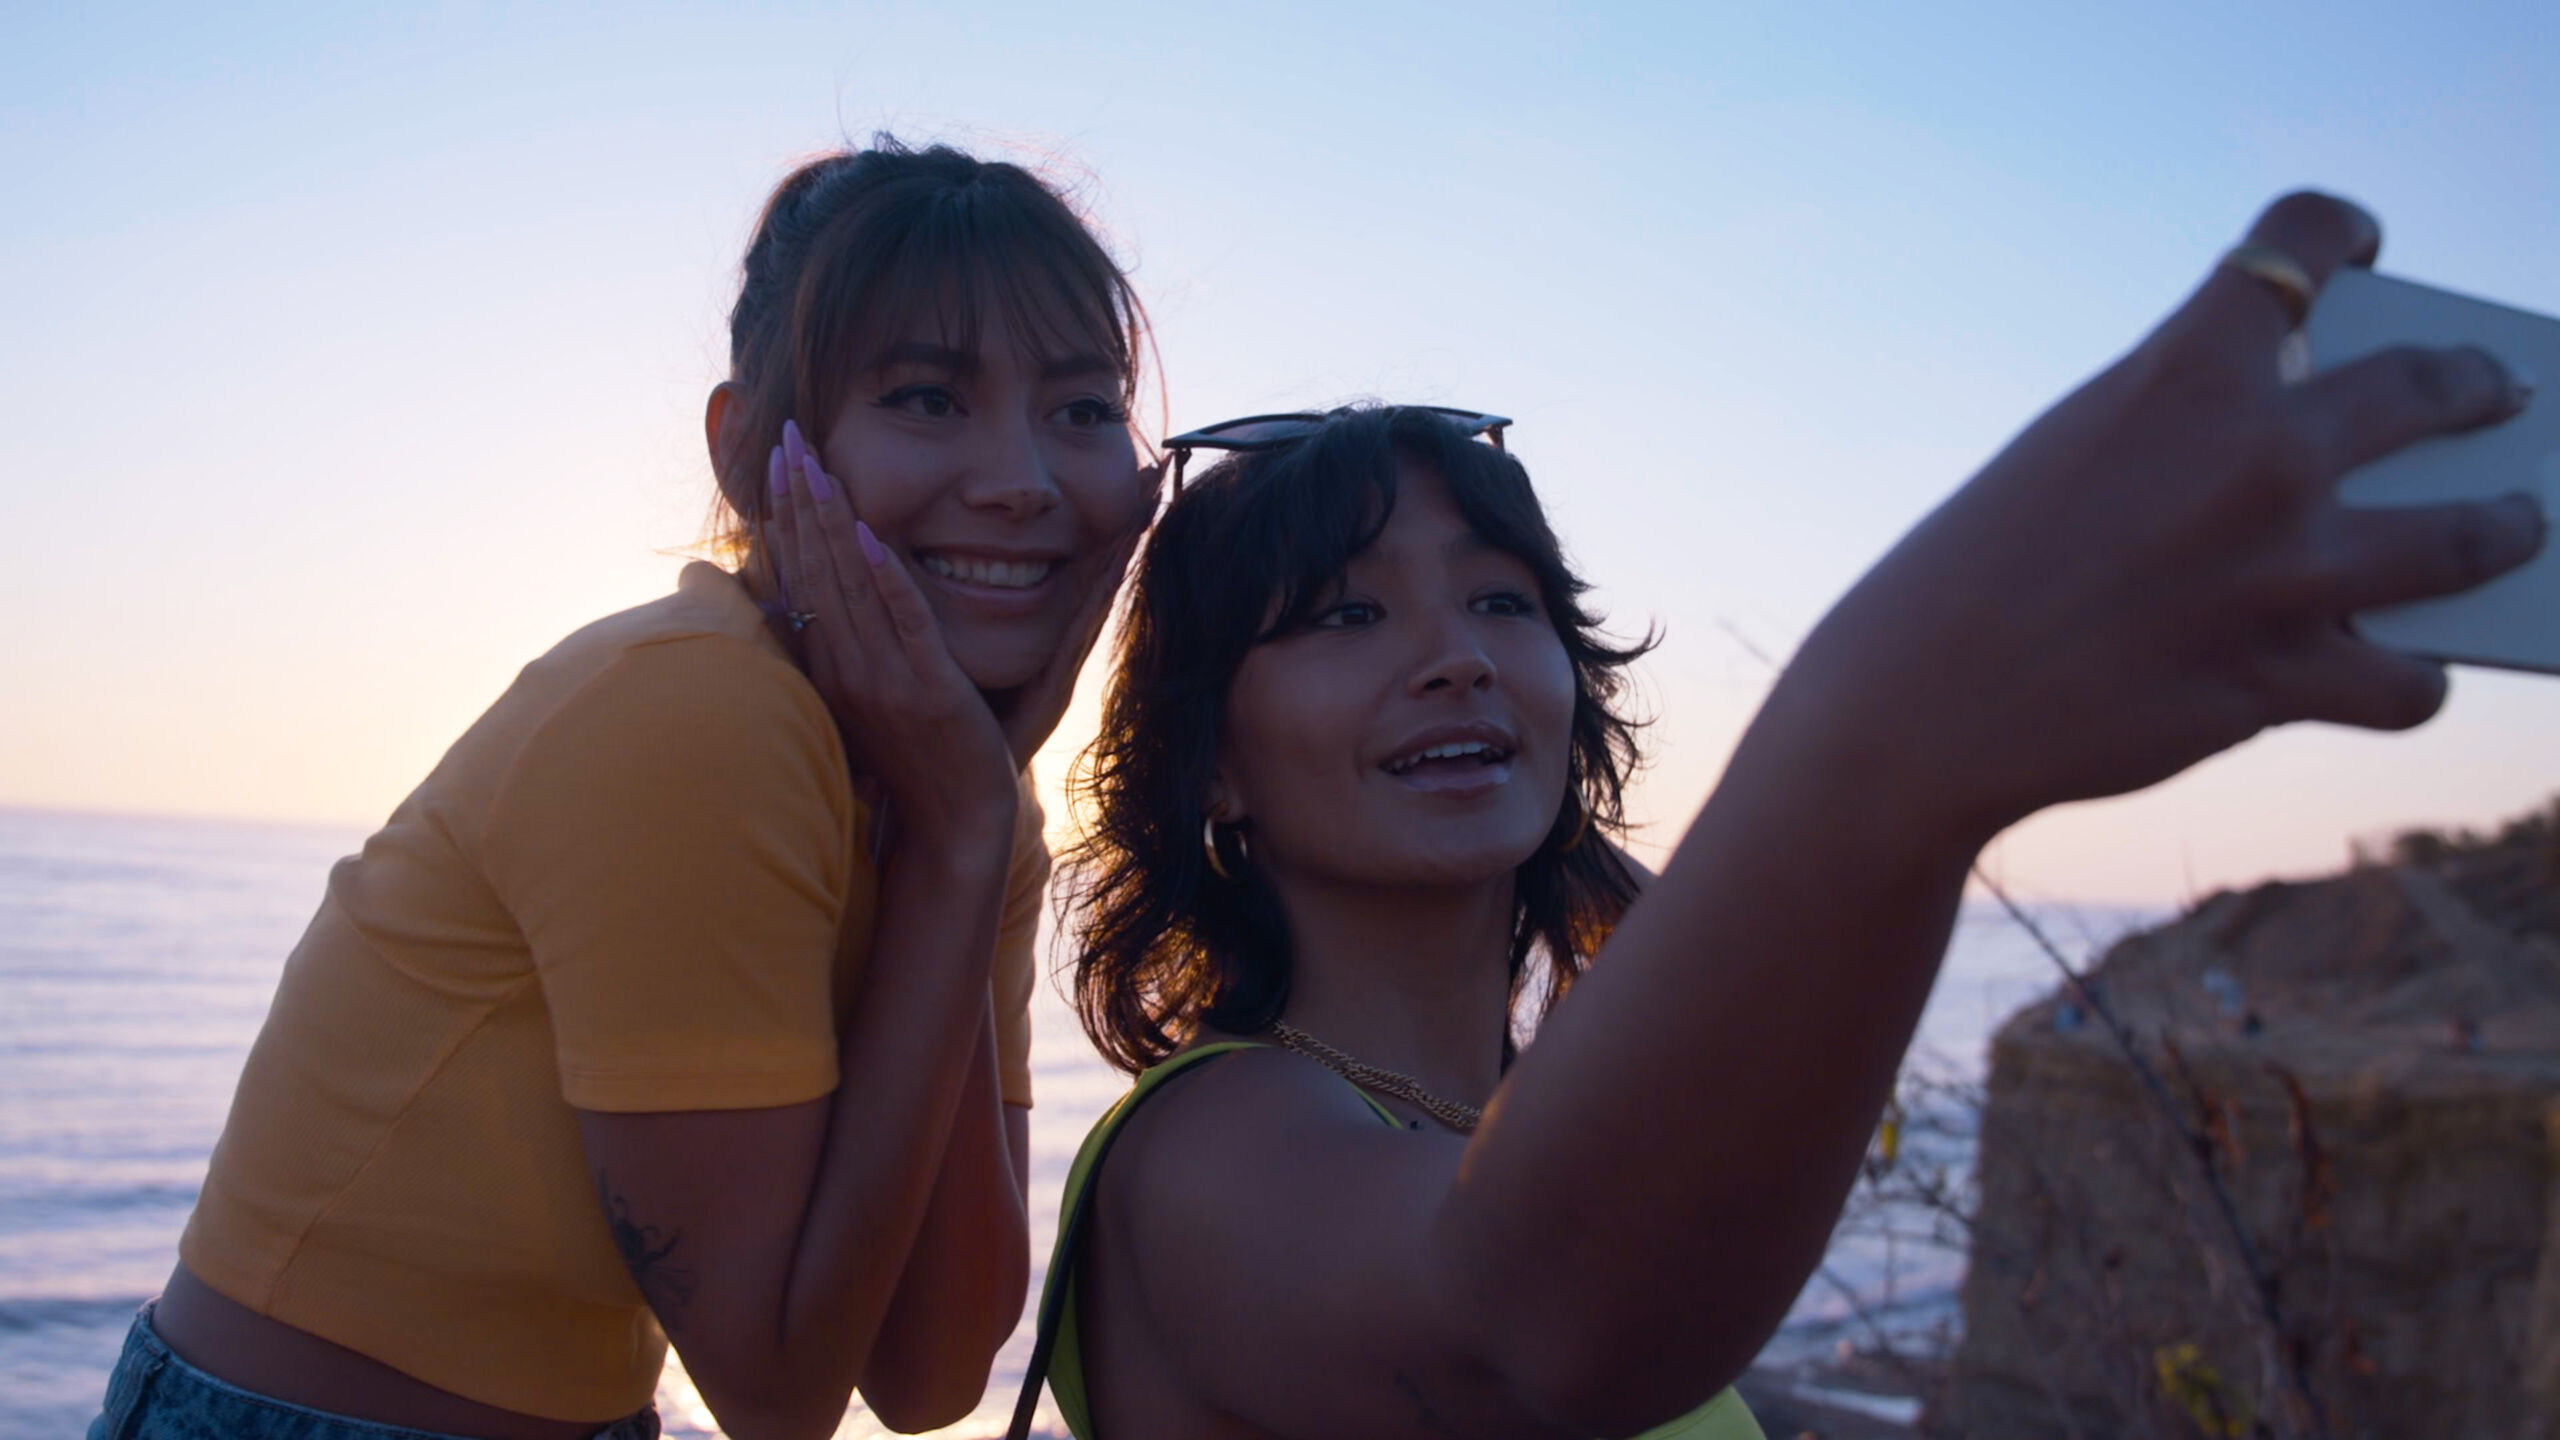 TikTok Influencer Deja Foxx and her sister taking selfie in front of the ocean